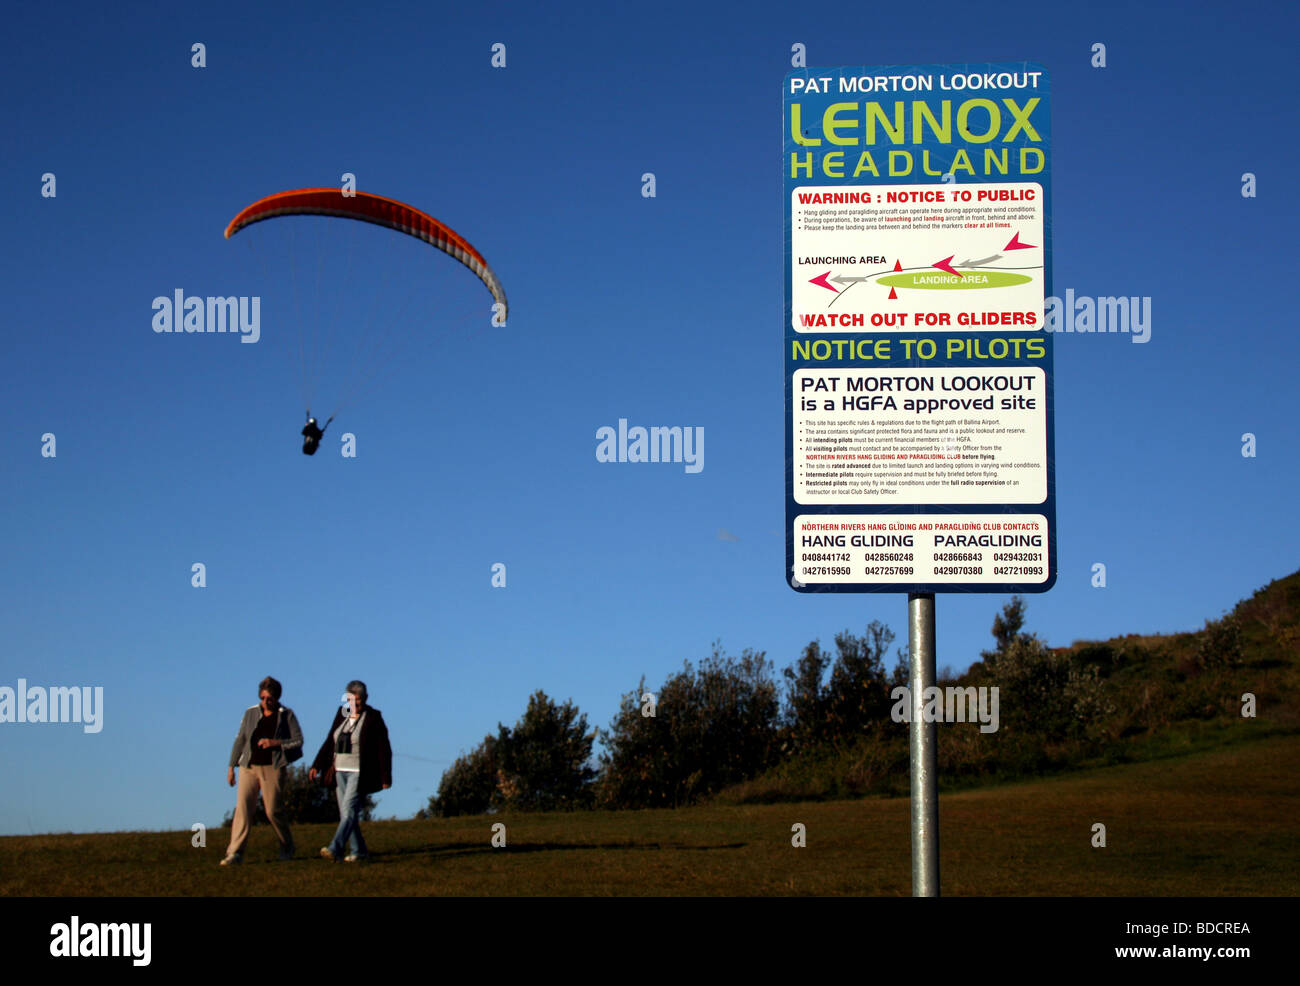 Un panneau met en garde les touristes à se méfier des deltaplanes au Pat Morton lookout près de Lennox Head en Australie Banque D'Images